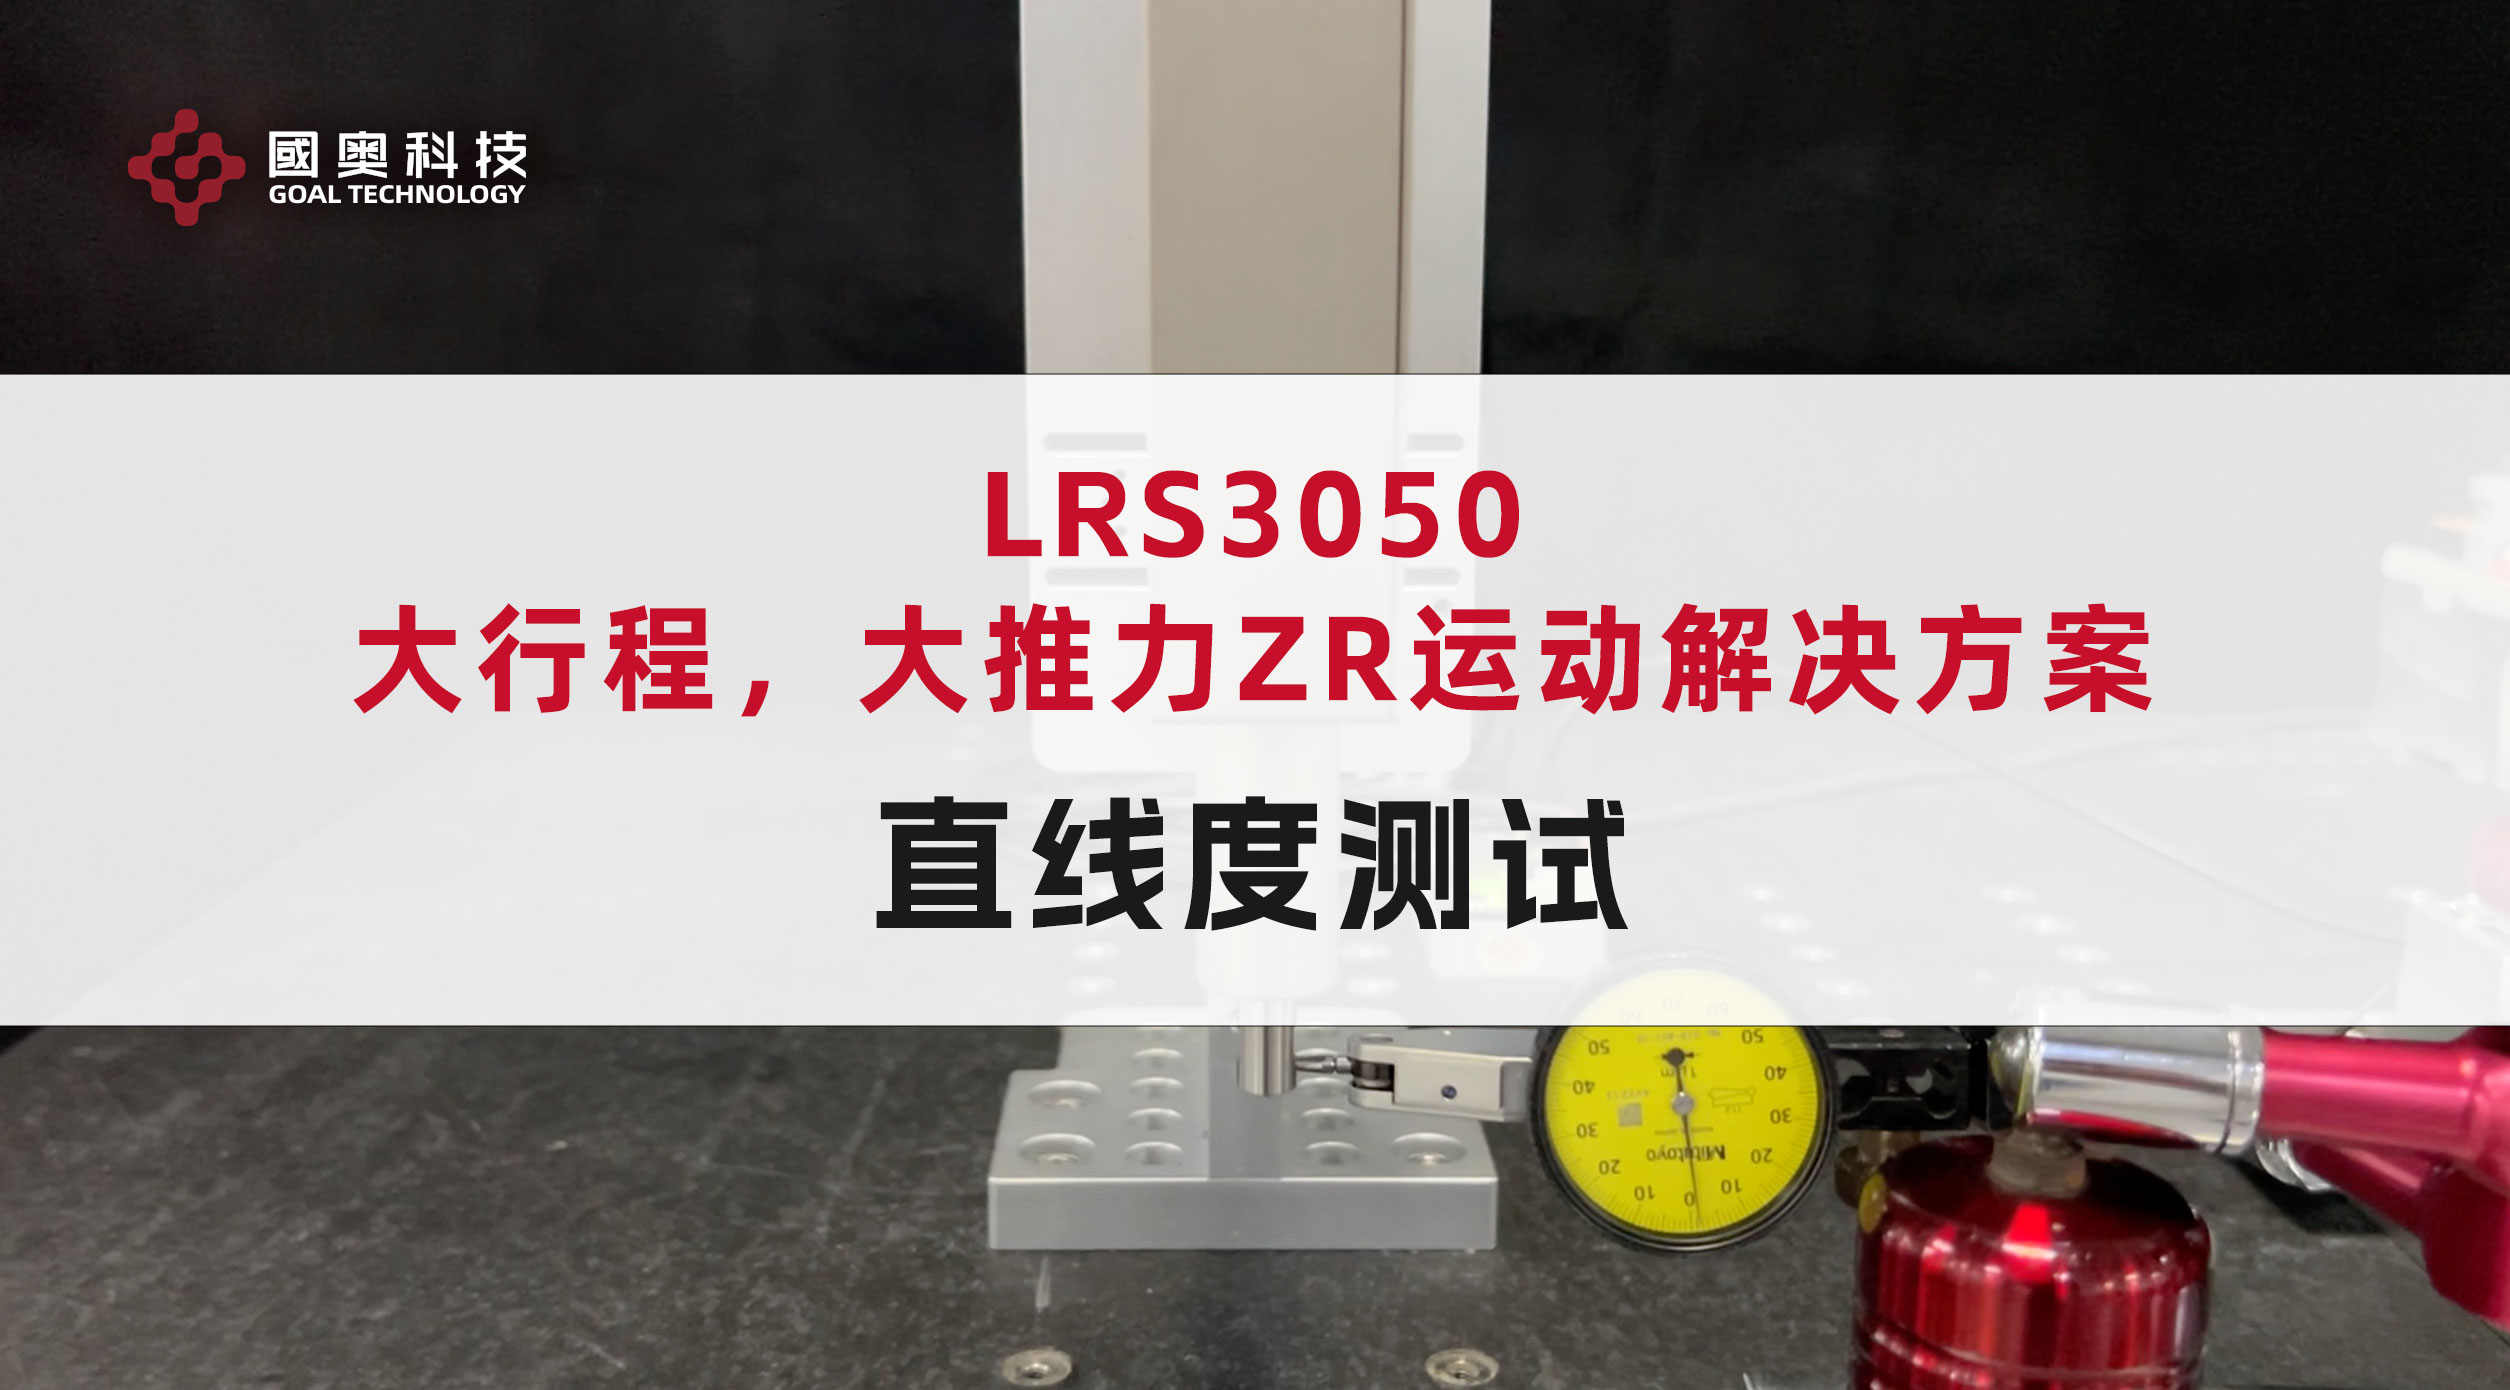 国奥科技高精度直线旋转电机LRS3050直线度测试，可实现±2μm直线度，有效确保高精度定位